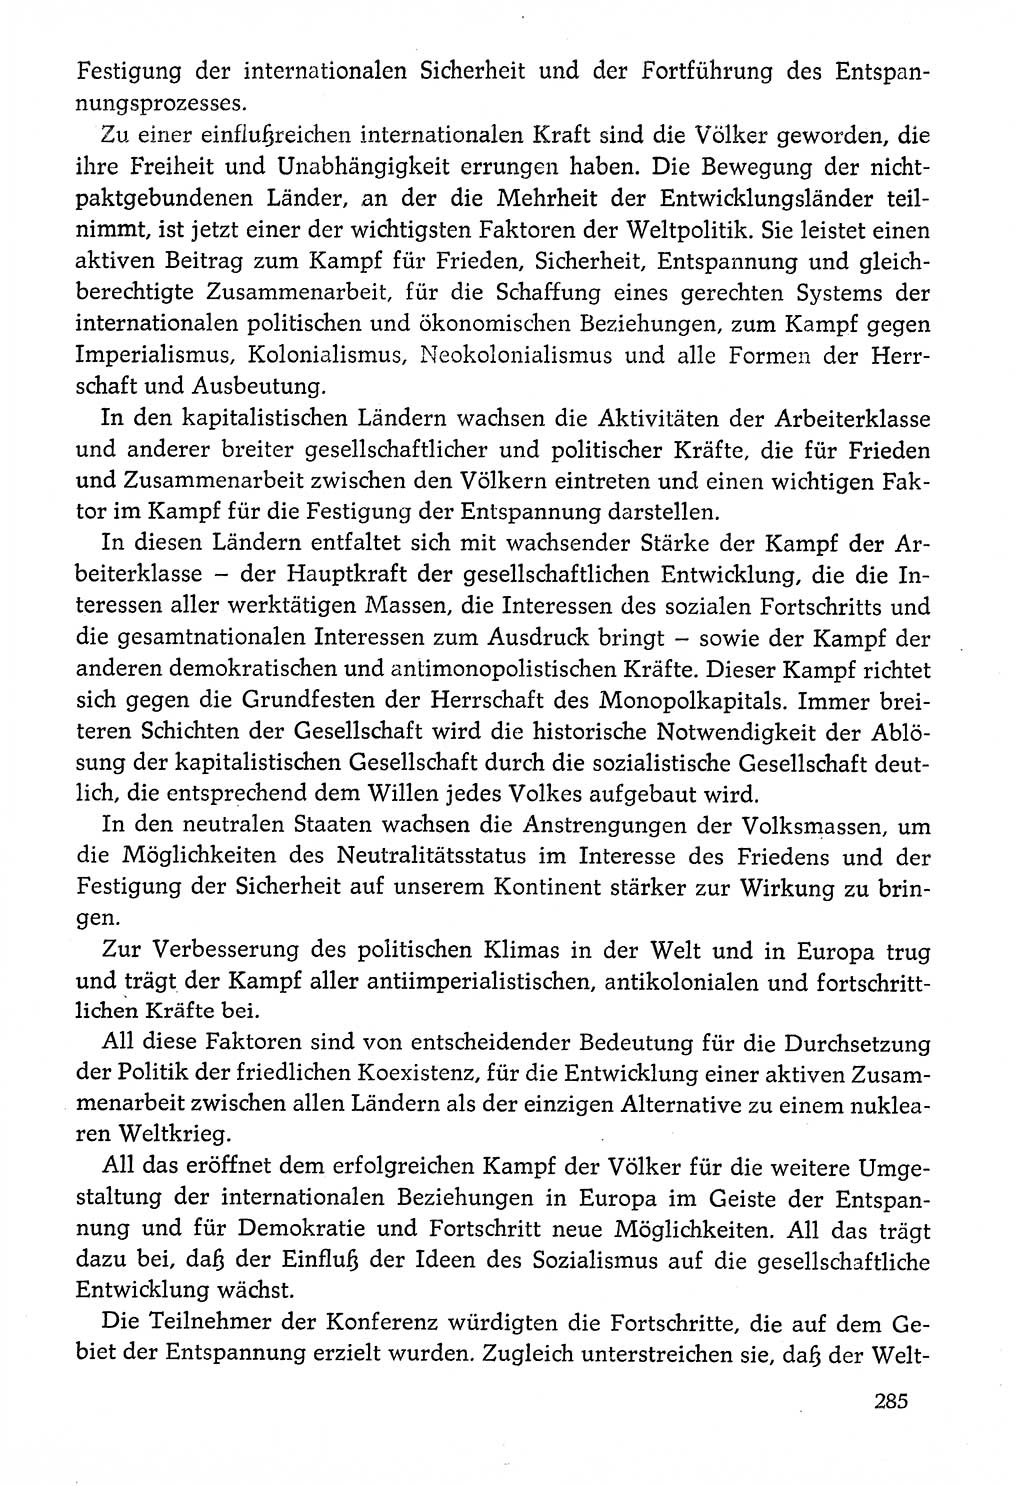 Dokumente der Sozialistischen Einheitspartei Deutschlands (SED) [Deutsche Demokratische Republik (DDR)] 1976-1977, Seite 285 (Dok. SED DDR 1976-1977, S. 285)